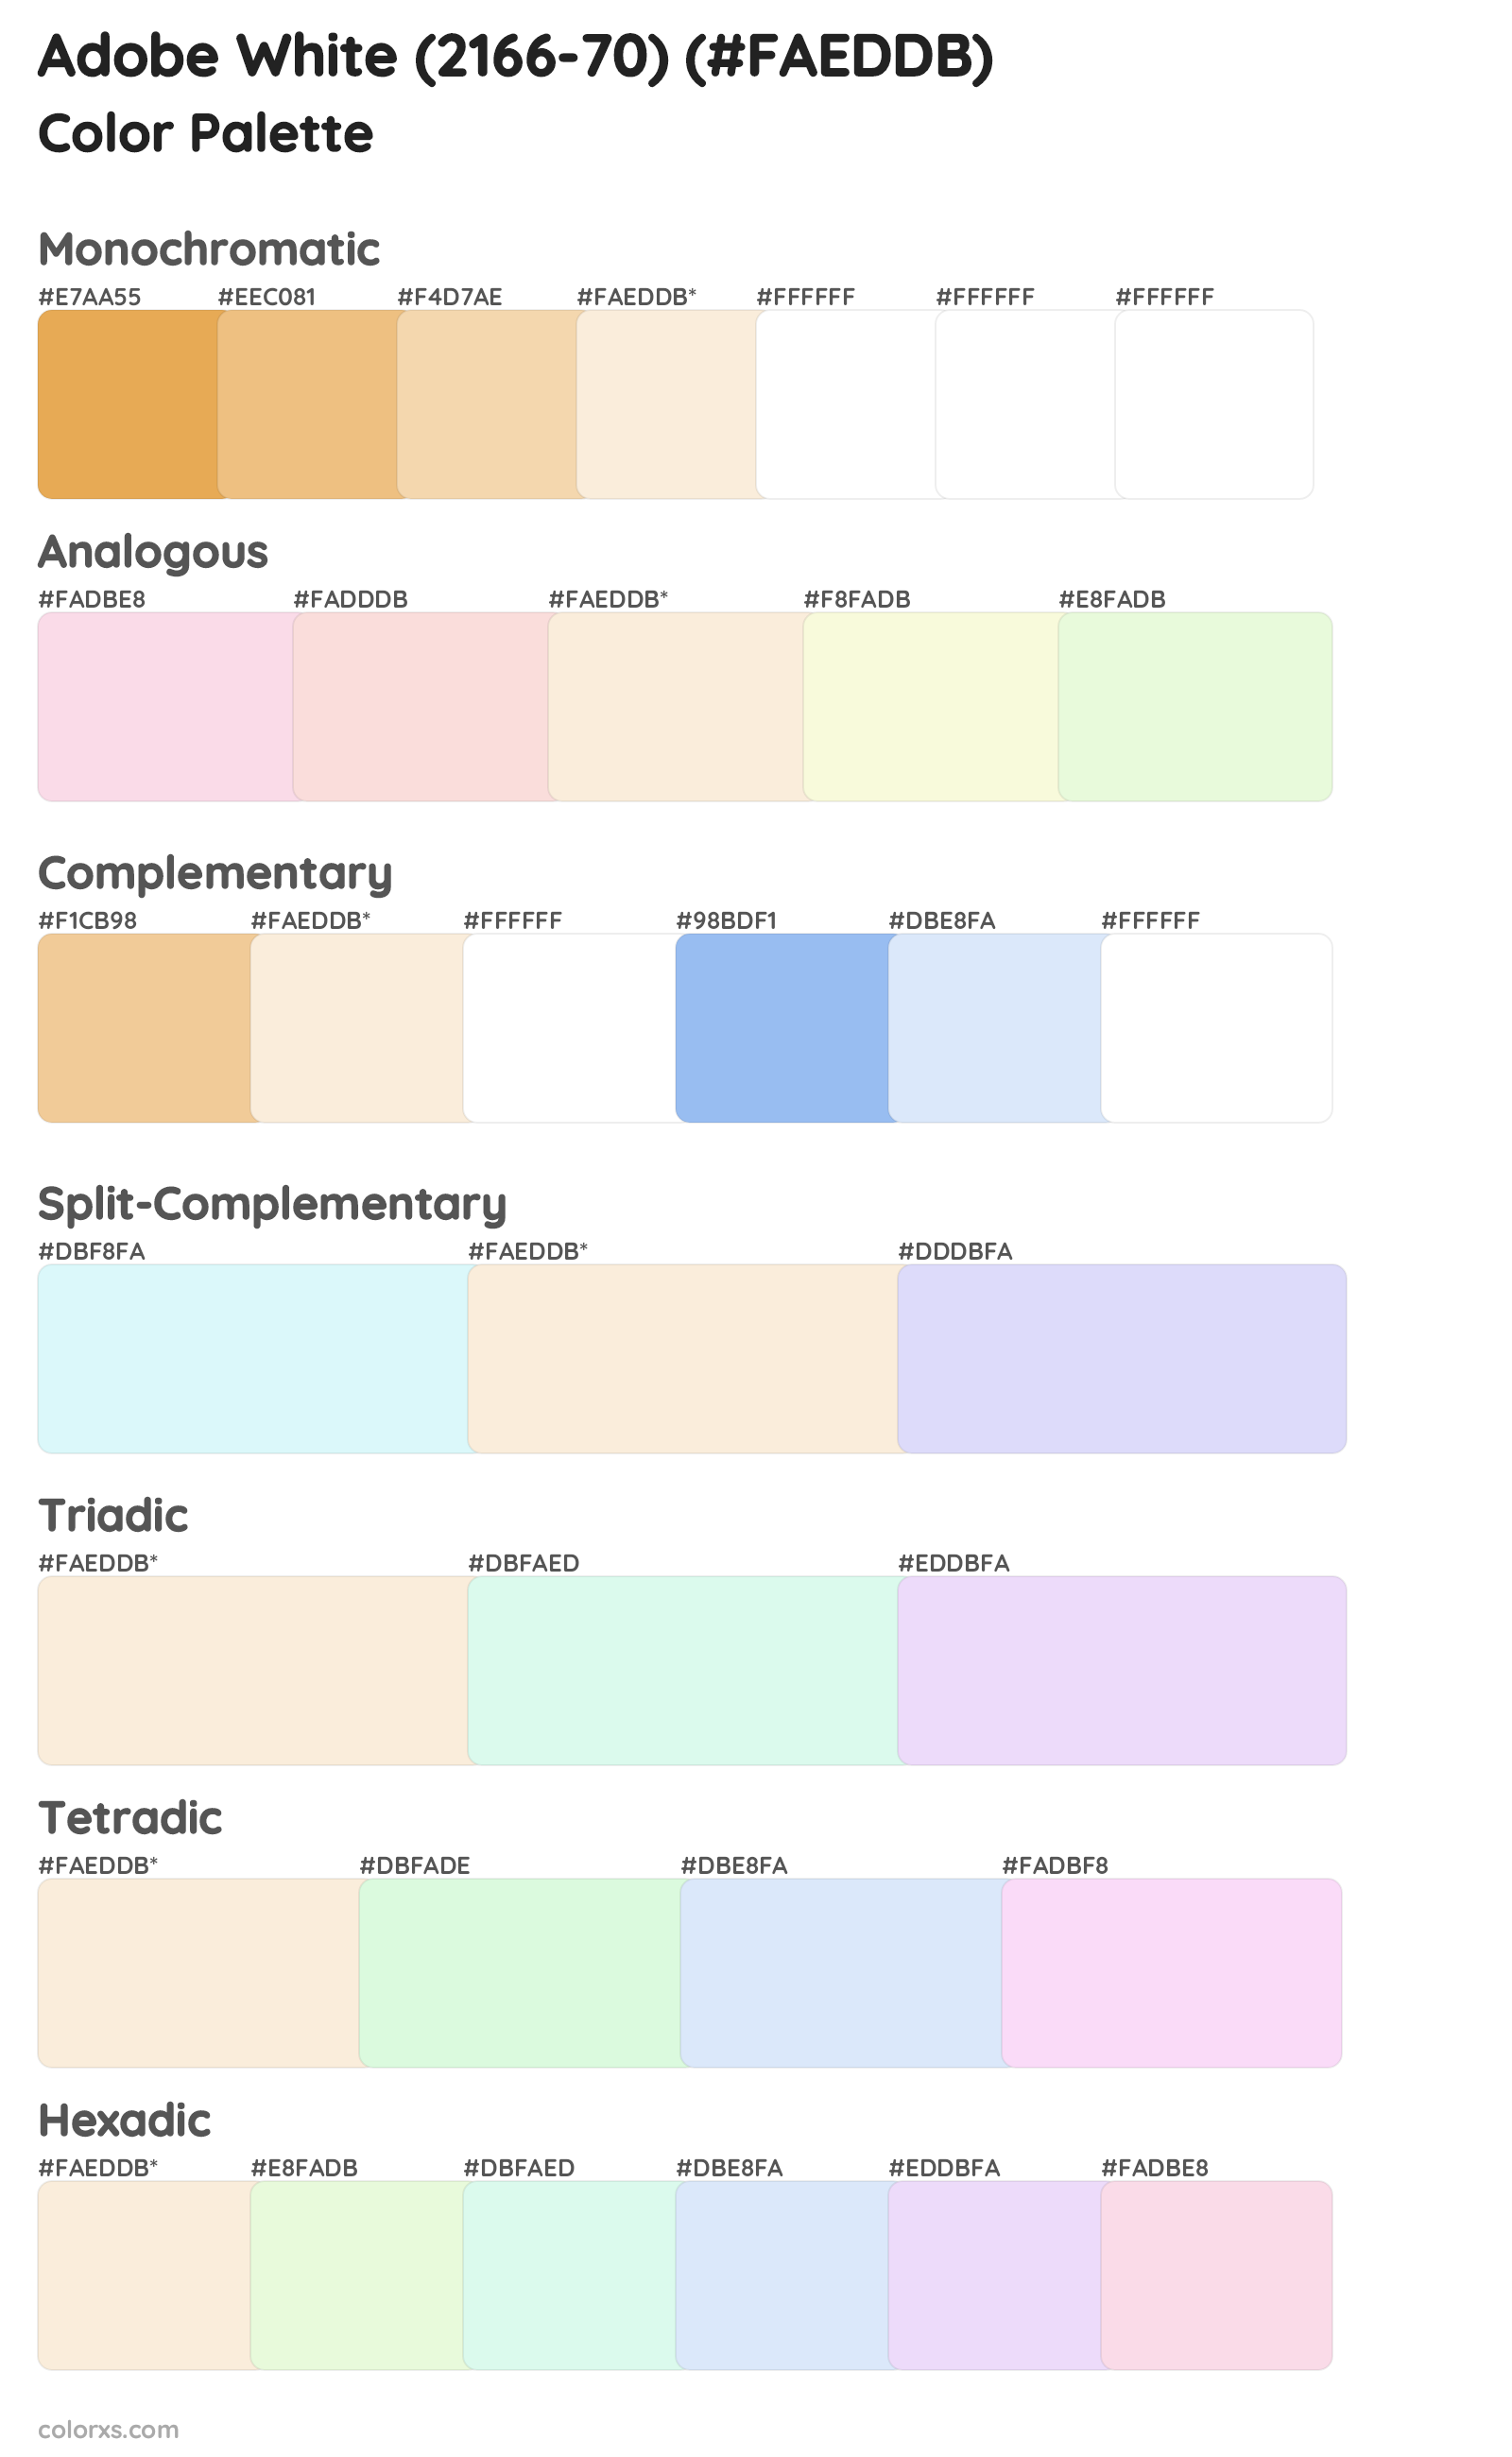 Adobe White (2166-70) Color Scheme Palettes